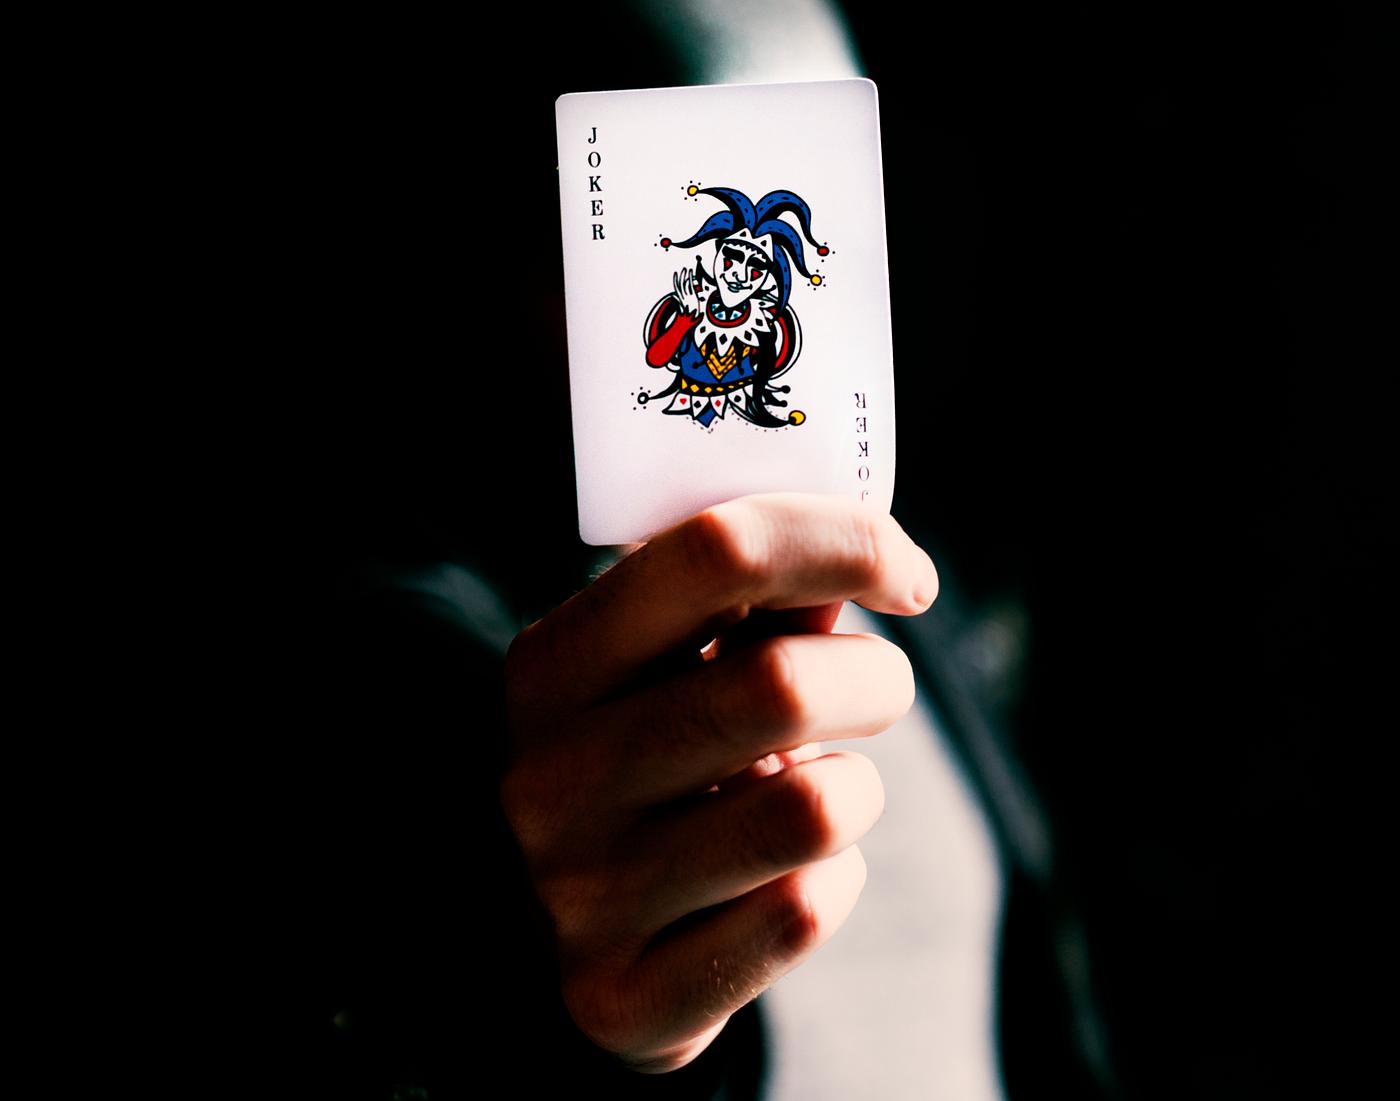 7 Card Poker online, free